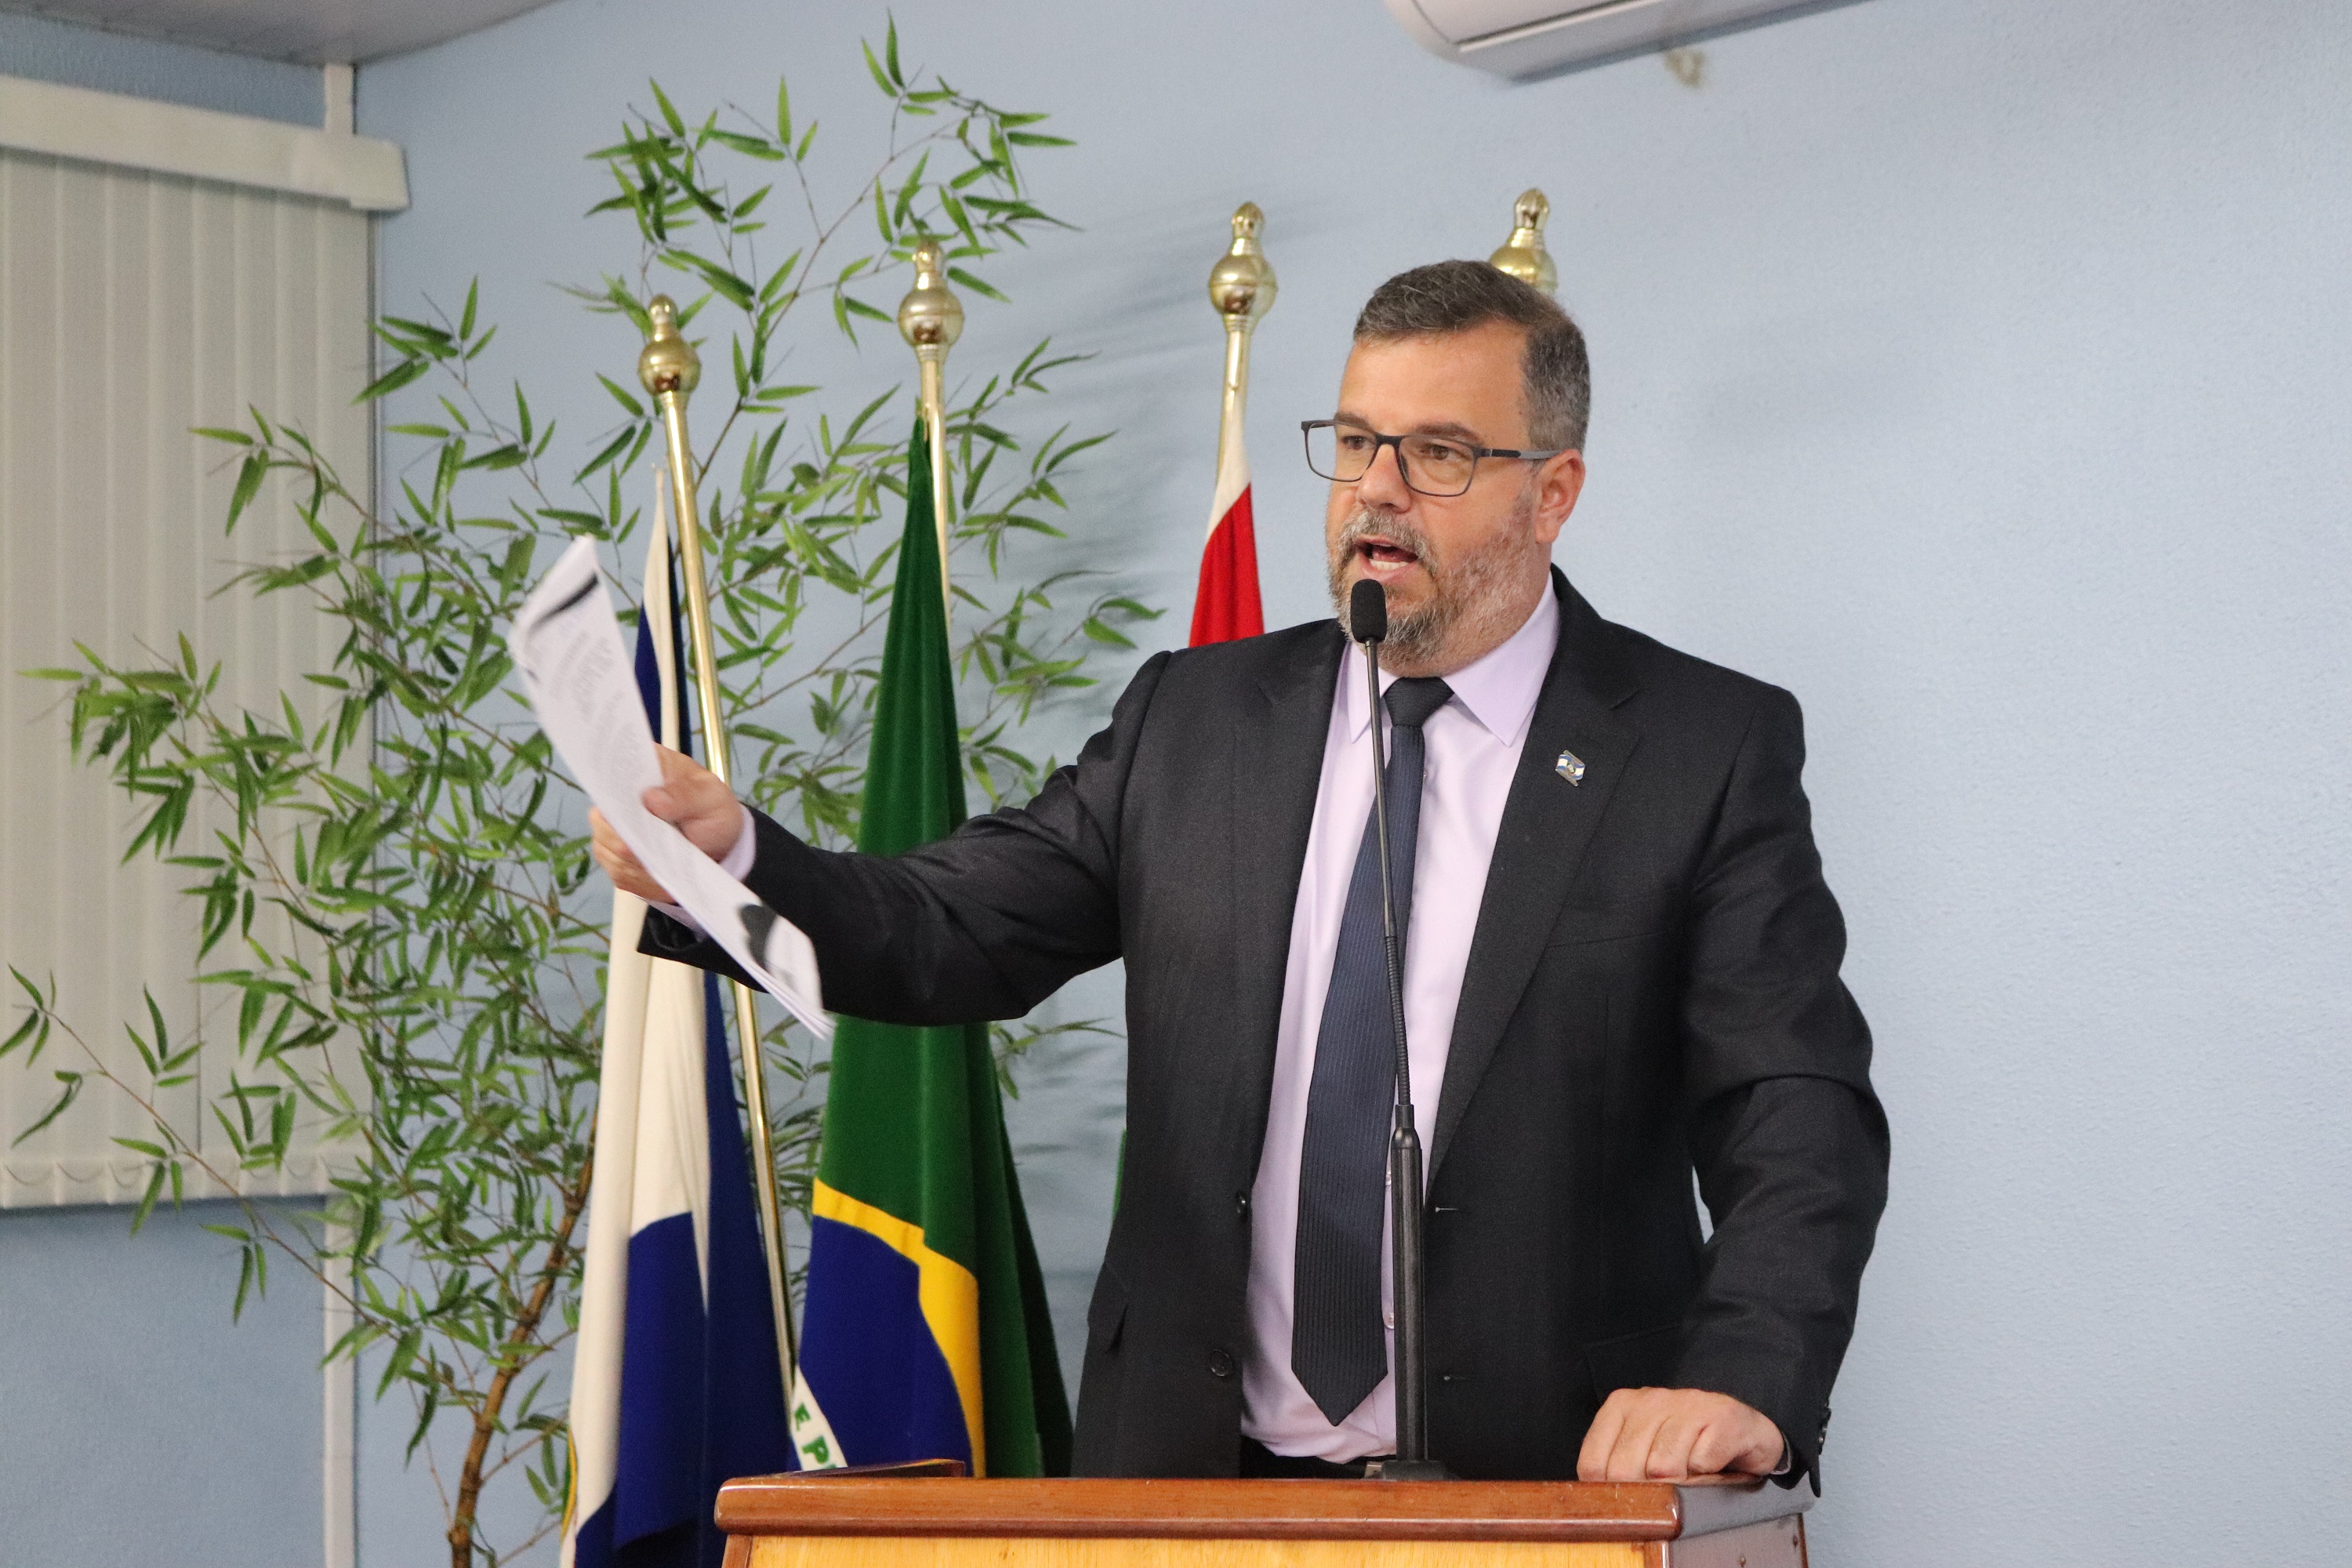 Durante Sessão, Vereador Pedroso cobra esclarecimentos sobre contratações da Expocampos e vencimento dos diretores da FHJA